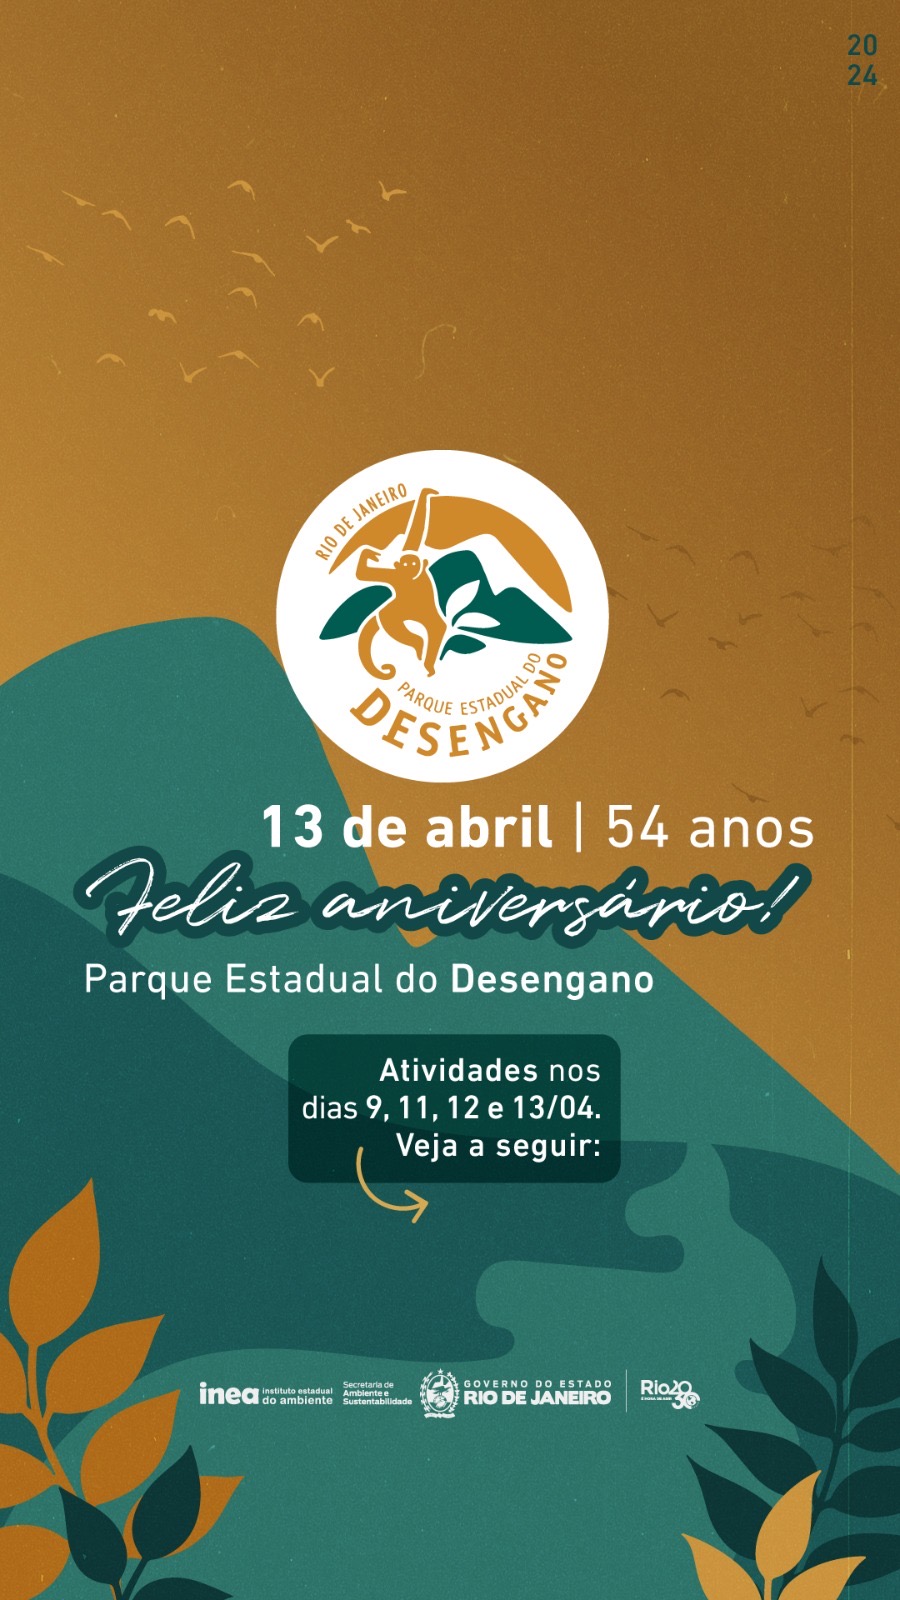 Convite: Parque Estadual do Desengano comemora 54 anos nesta semana com diversas atividades